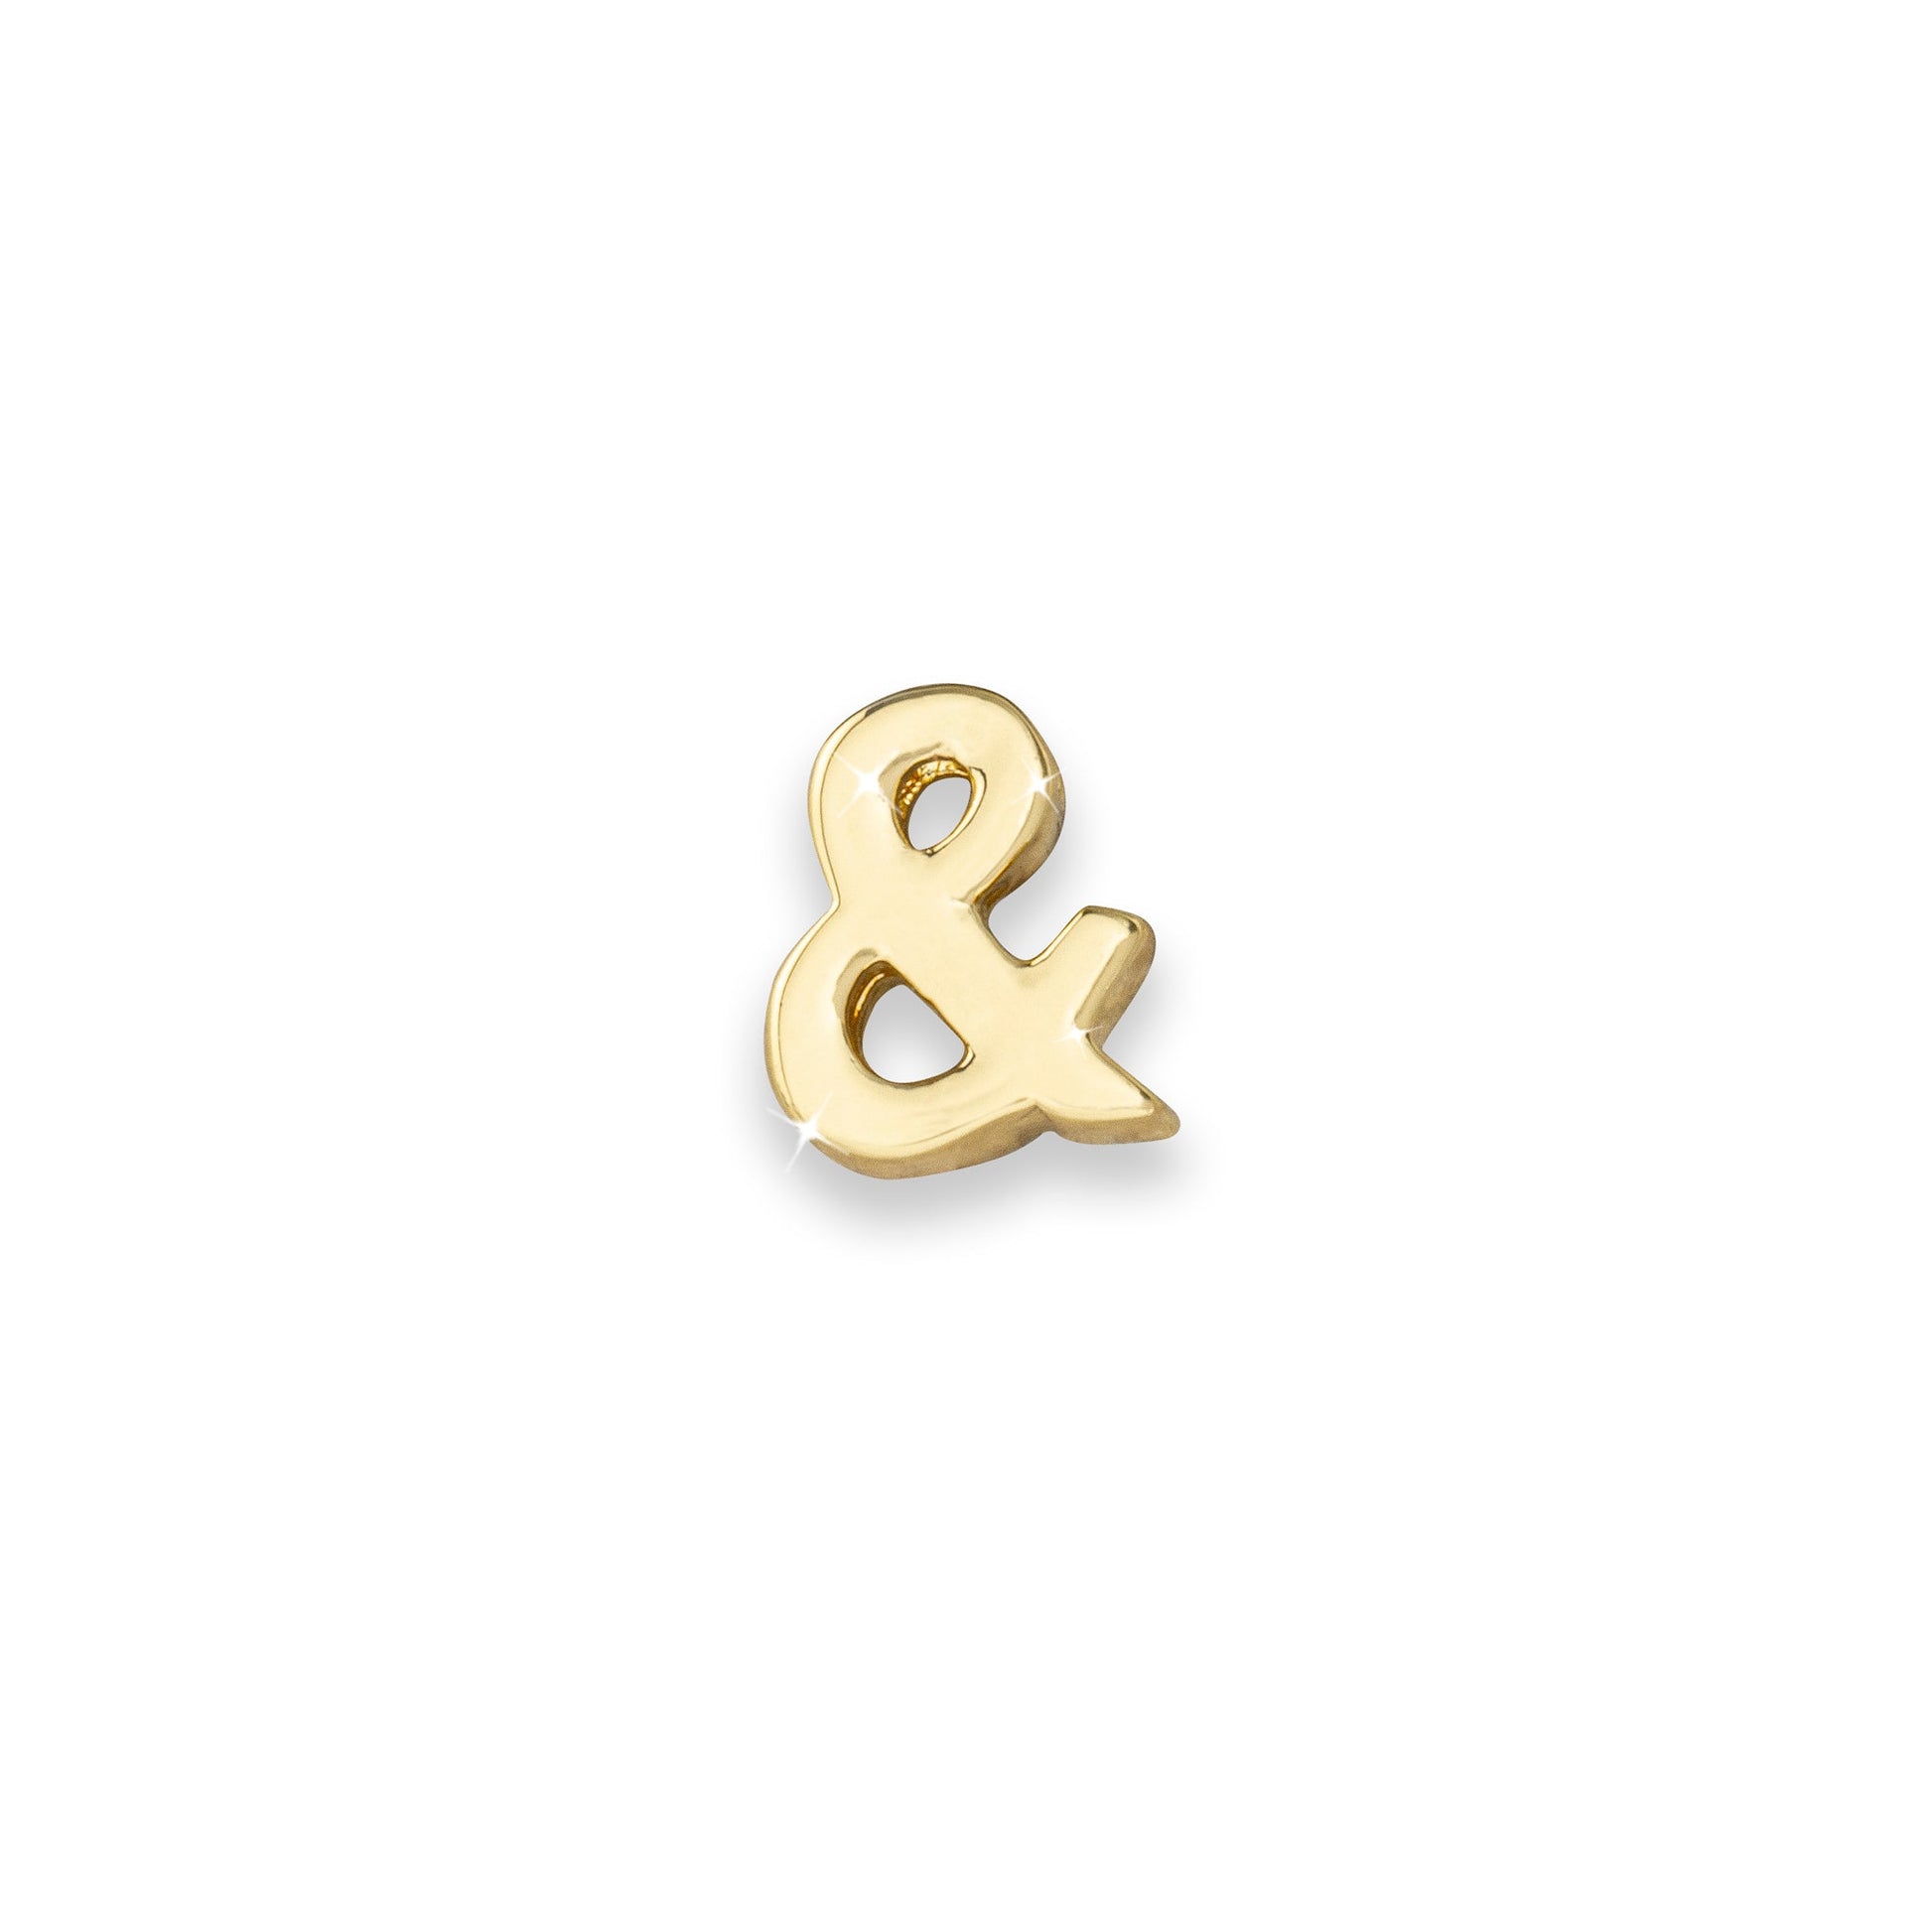 Gold & sign ampersand monogram charm for necklaces & bracelets